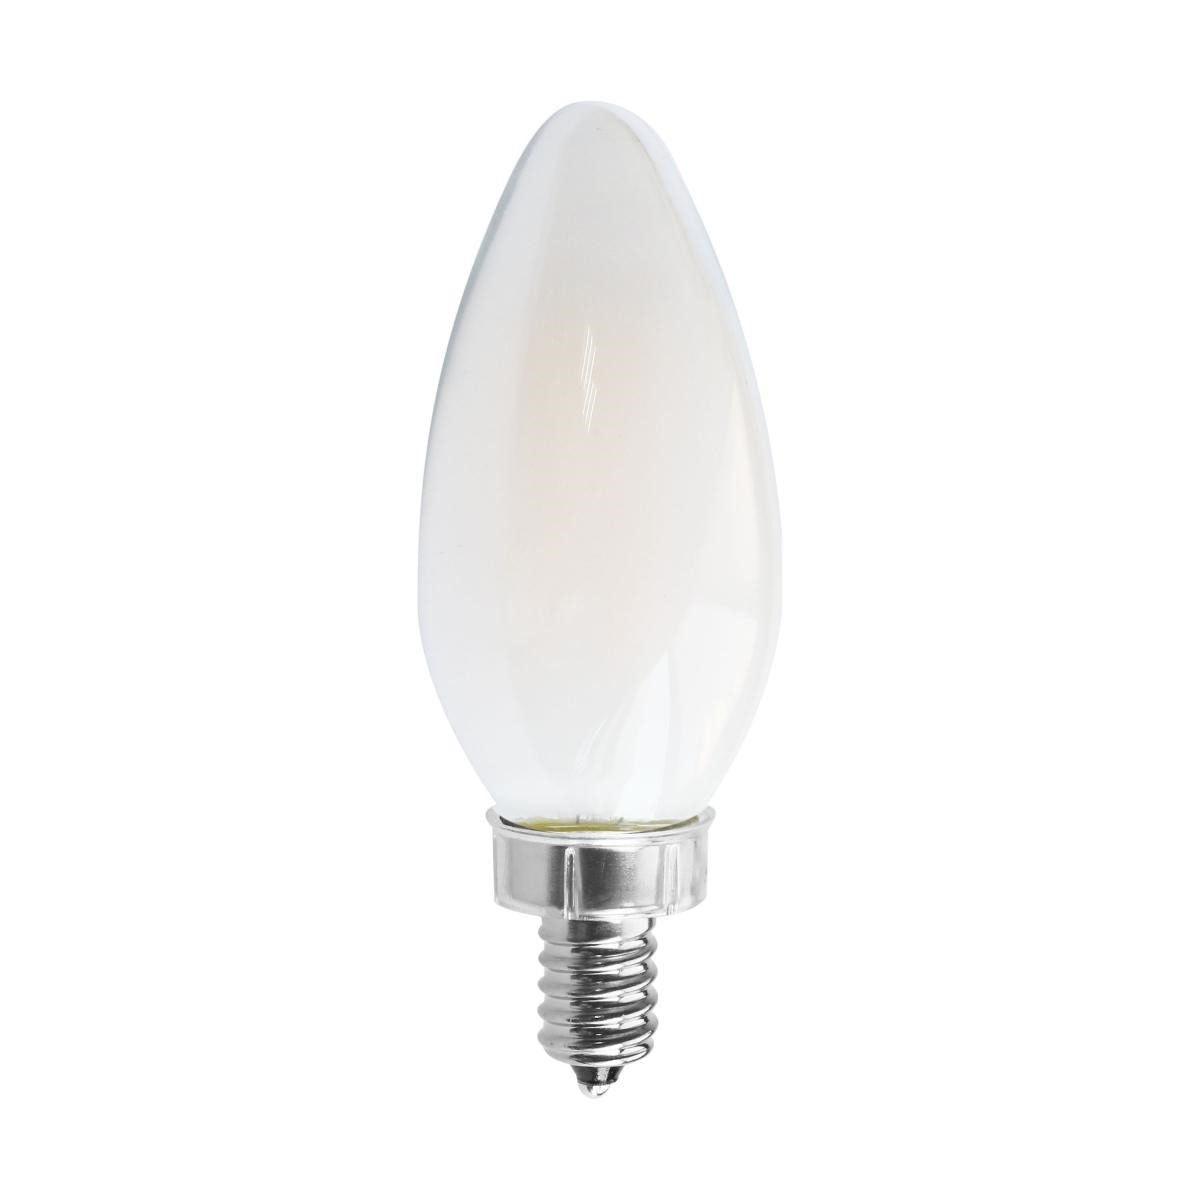 C11 Candle LED Bulb, 8 Watt, 760 Lumens, 2700K, E12 Candelabra Base, Frosted Finish